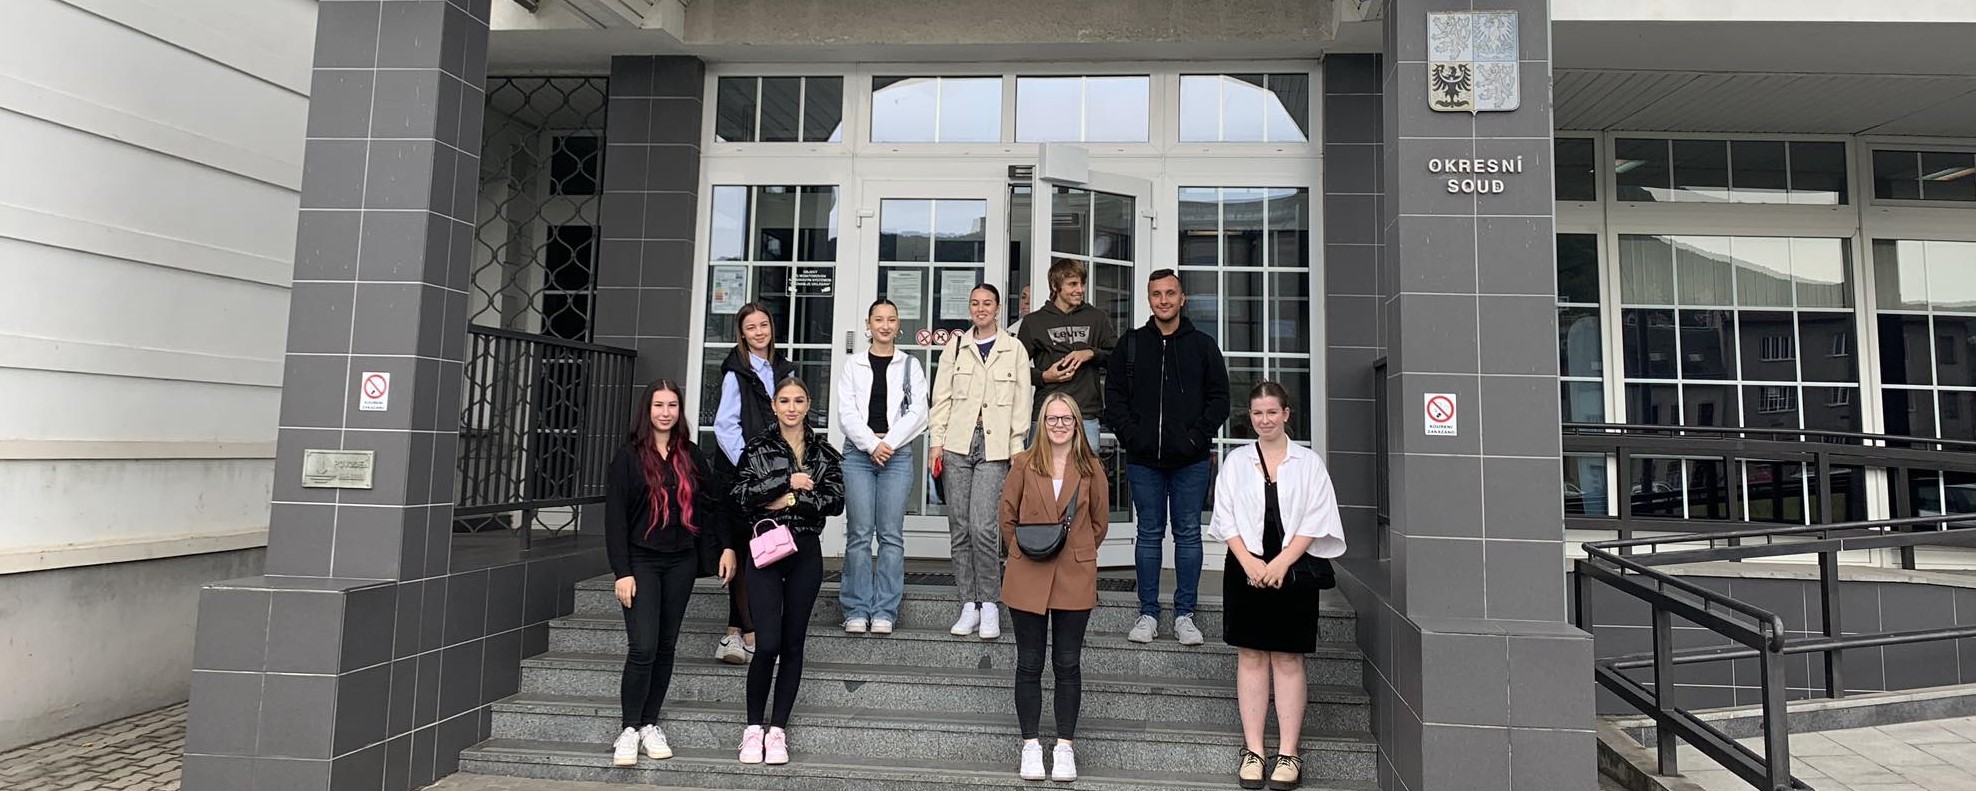 Návštěva Okresního soudu v Ústí nad Labem